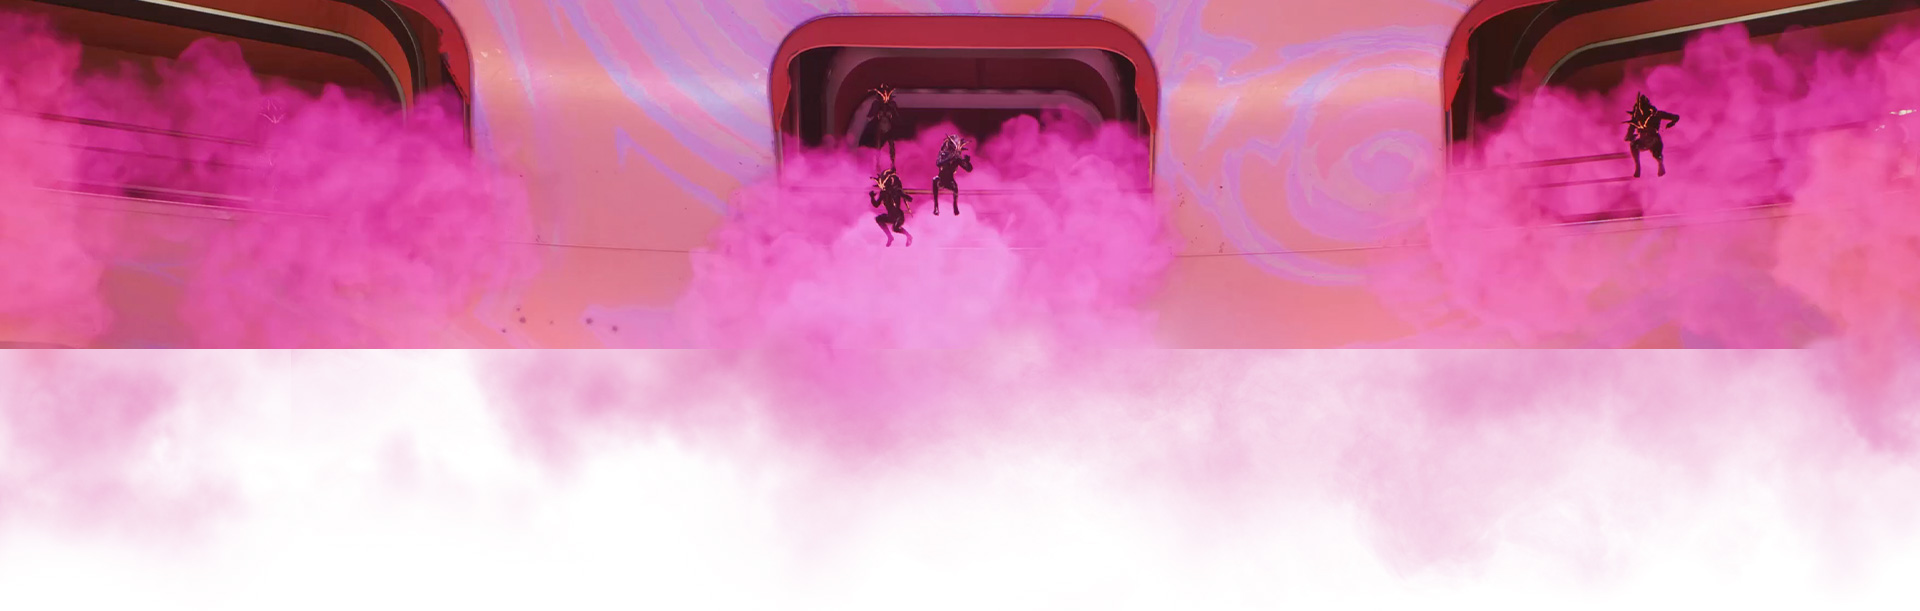 Una tripulación salta de un barco, rodeada de humo rosa.